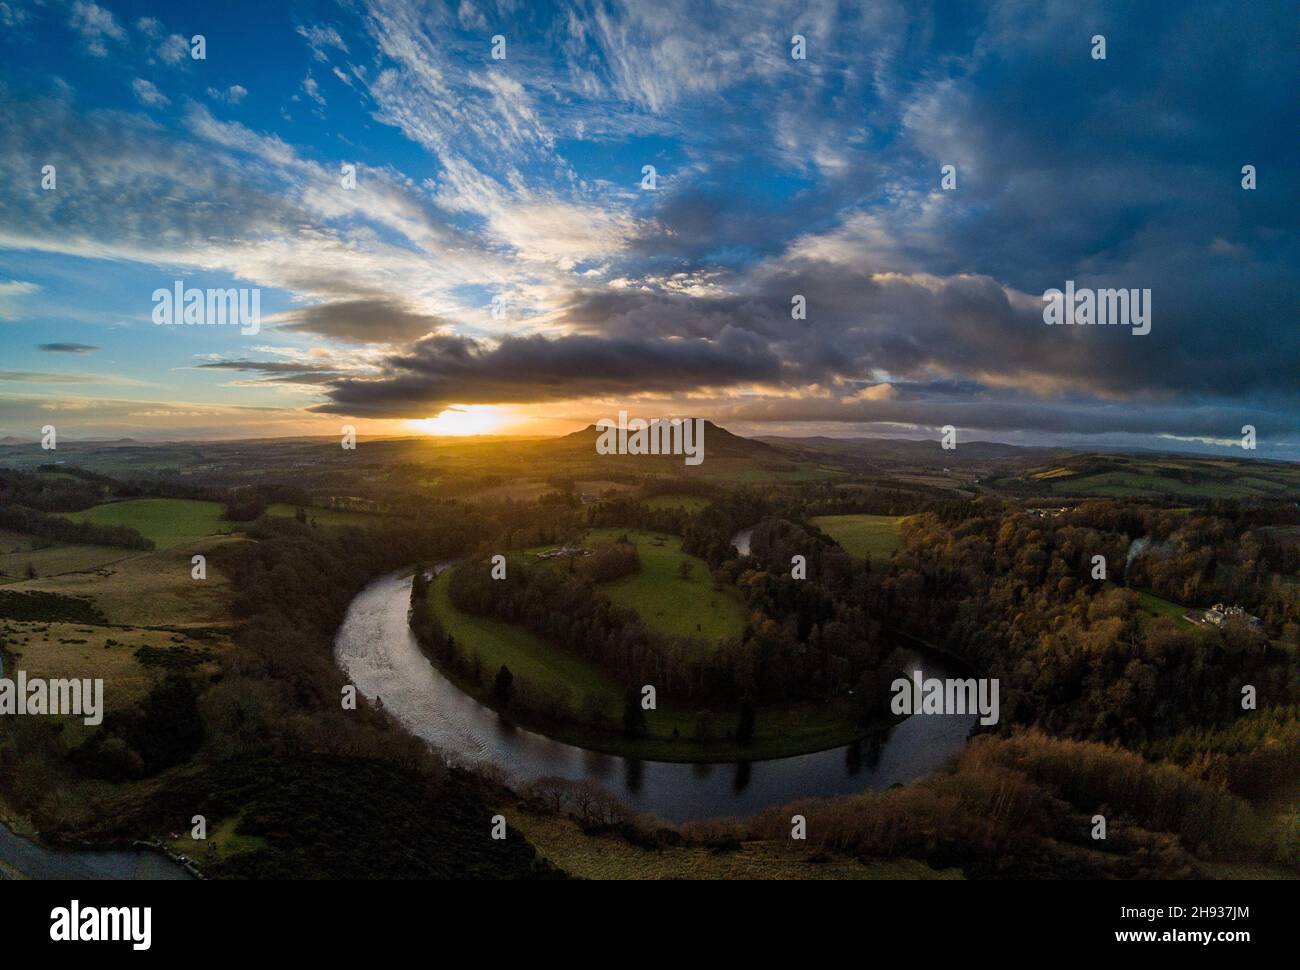 Sonnenuntergang bei Scott's View mit Blick über den River Tweed, über Old Melrose und die Eildon Hills dahinter. Bemersyde, Scottish Borders, Schottland, Großbritannien Stockfoto